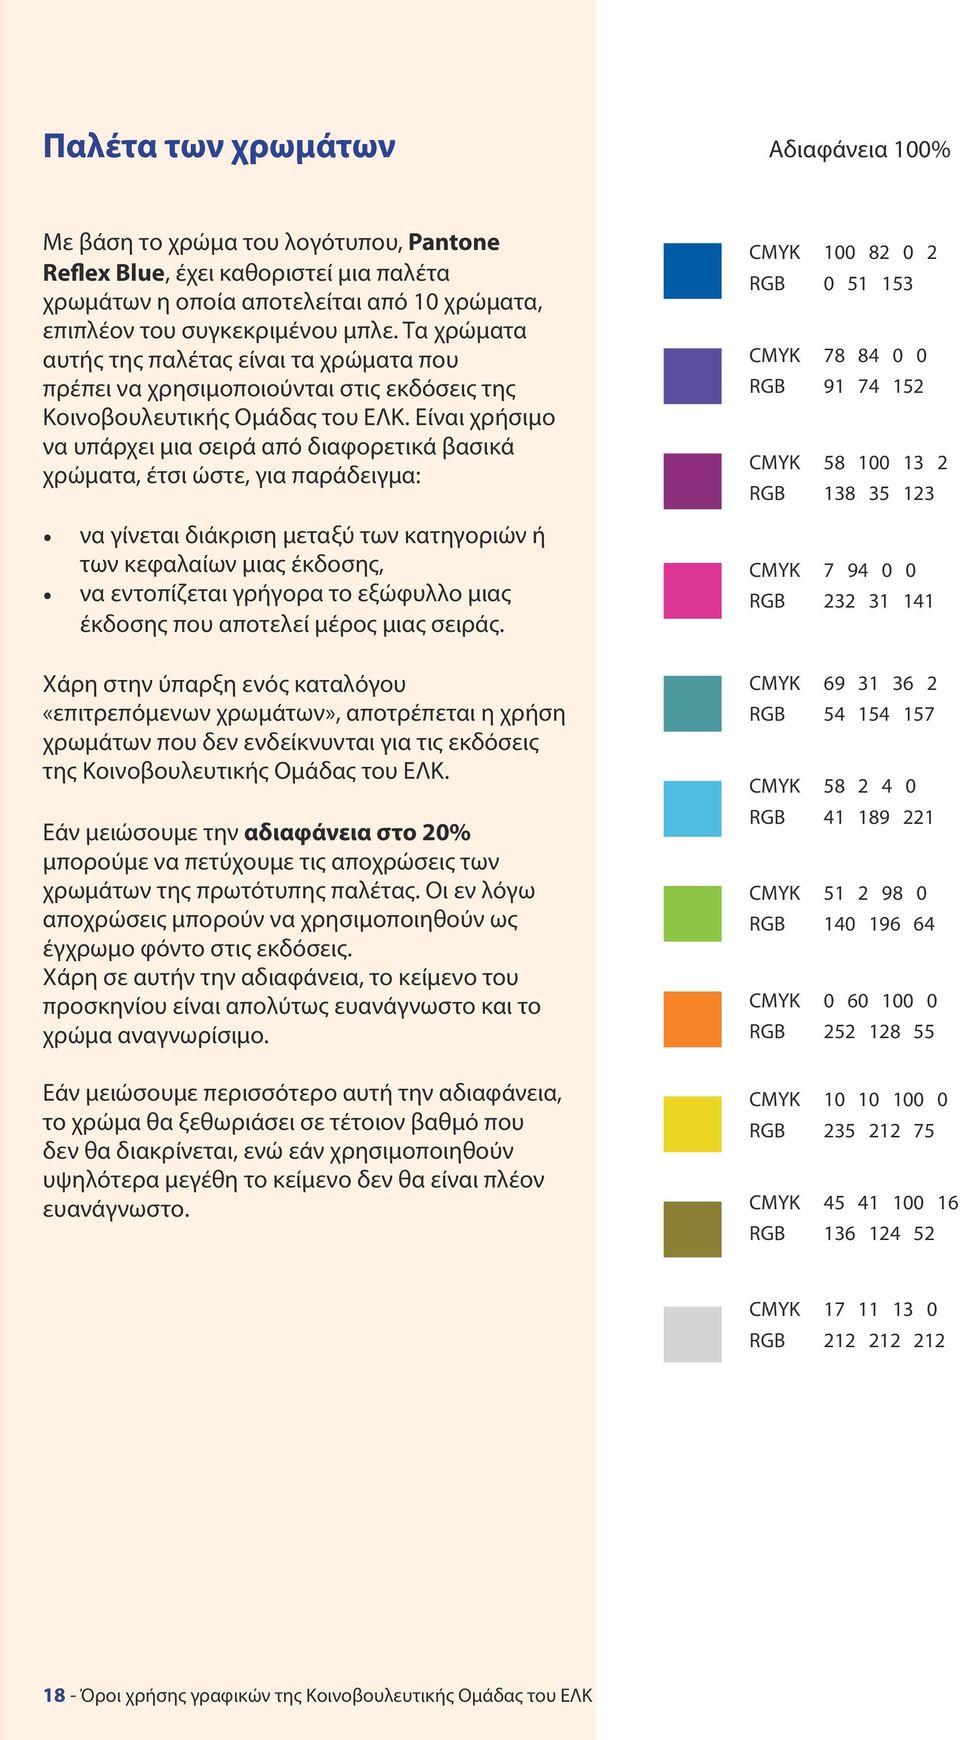 Είναι χρήσιμο να υπάρχει μια σειρά από διαφορετικά βασικά χρώματα, έτσι ώστε, για παράδειγμα: να γίνεται διάκριση μεταξύ των κατηγοριών ή των κεφαλαίων μιας έκδοσης, να εντοπίζεται γρήγορα το